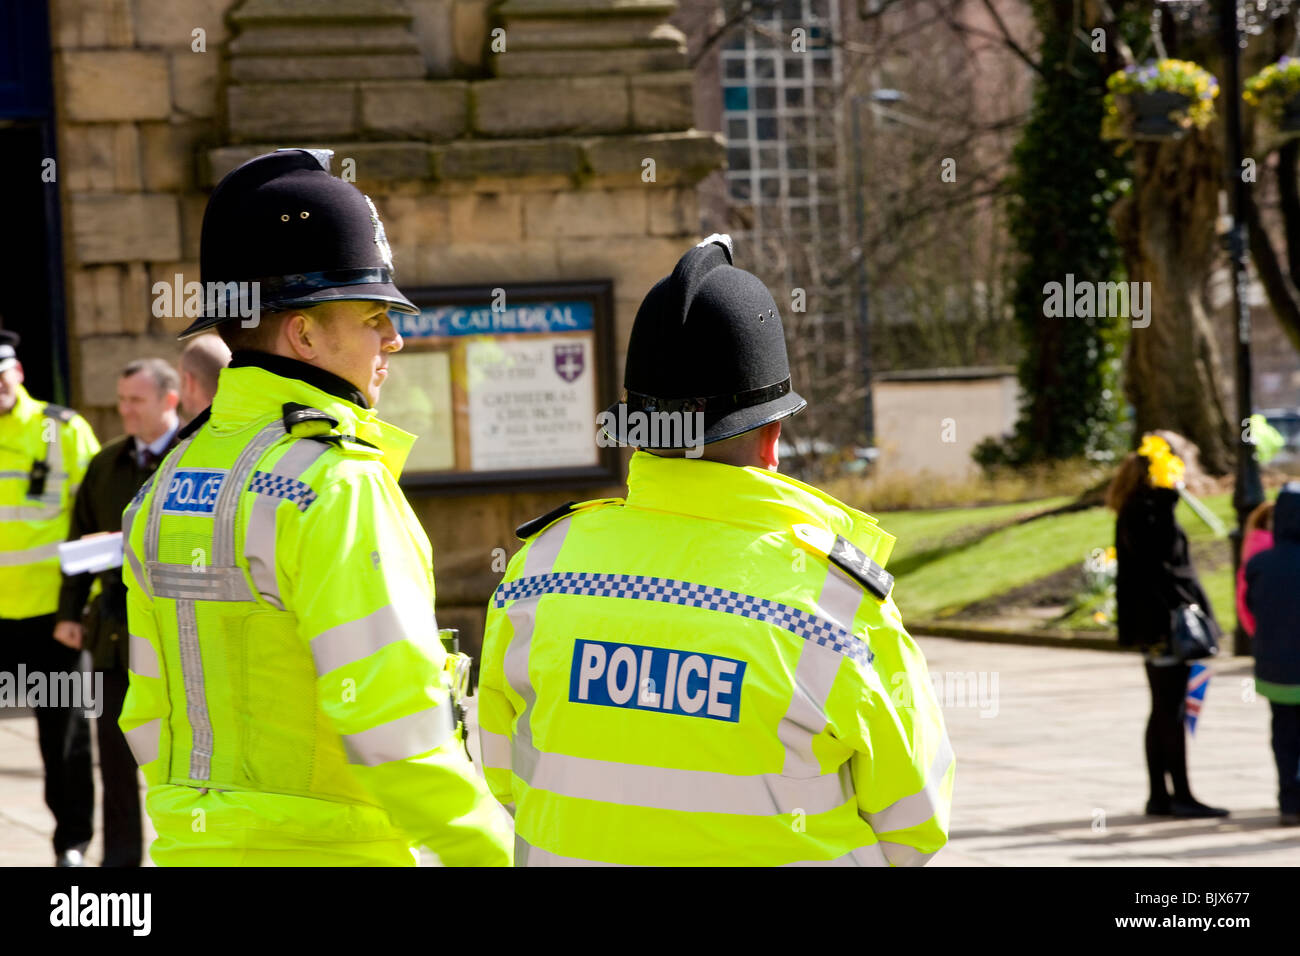 Deux policiers montent la garde à regarder la foule à l'extérieur de la cathédrale de Derby au cours de la visite de Queens pour Pâques Jeudi Saint. Banque D'Images